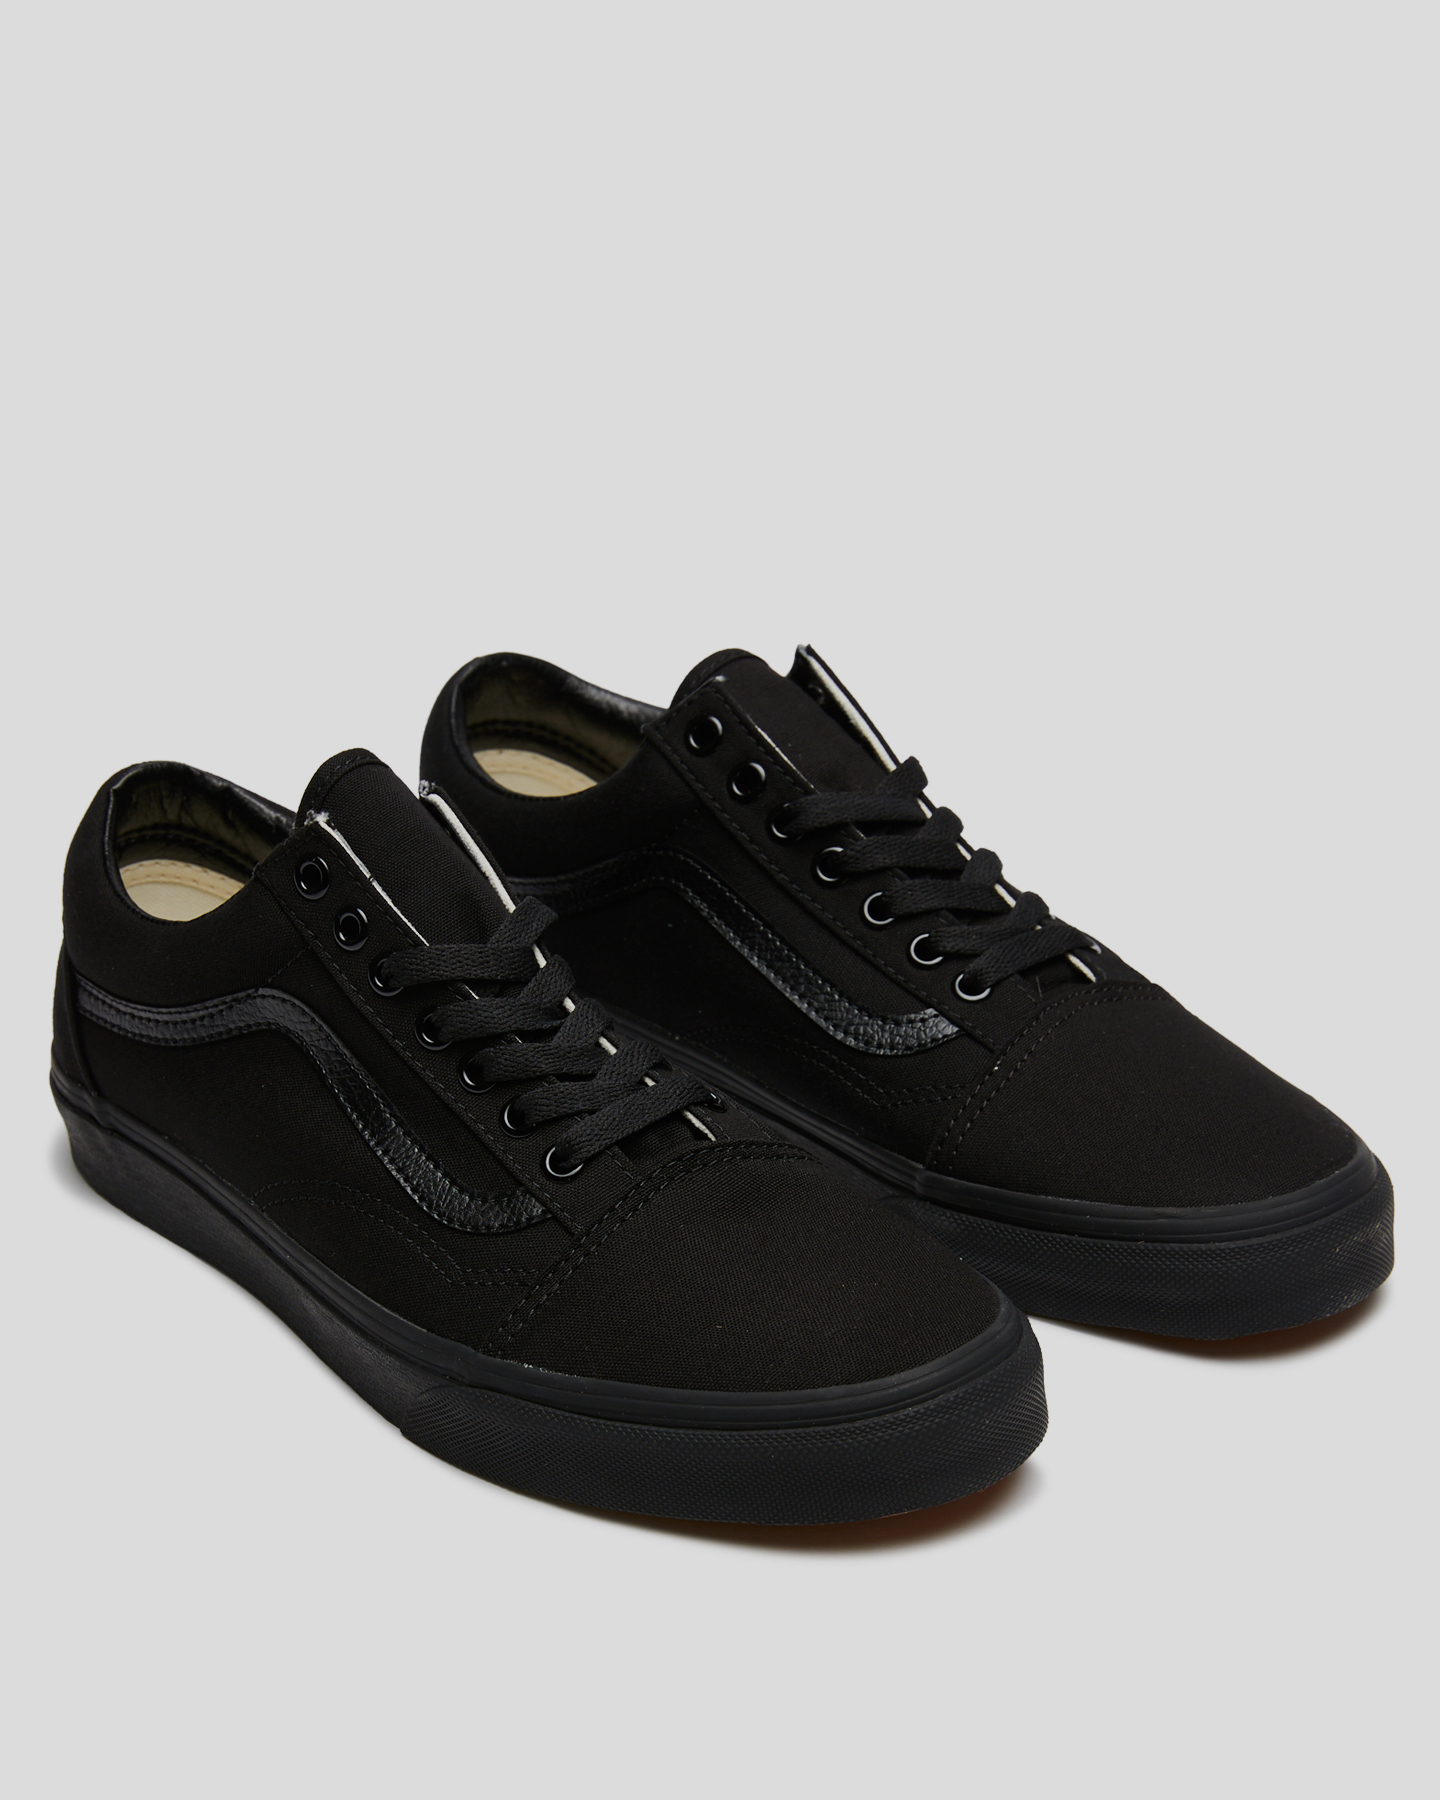 Vans Old Skool Shoe - Black Black 